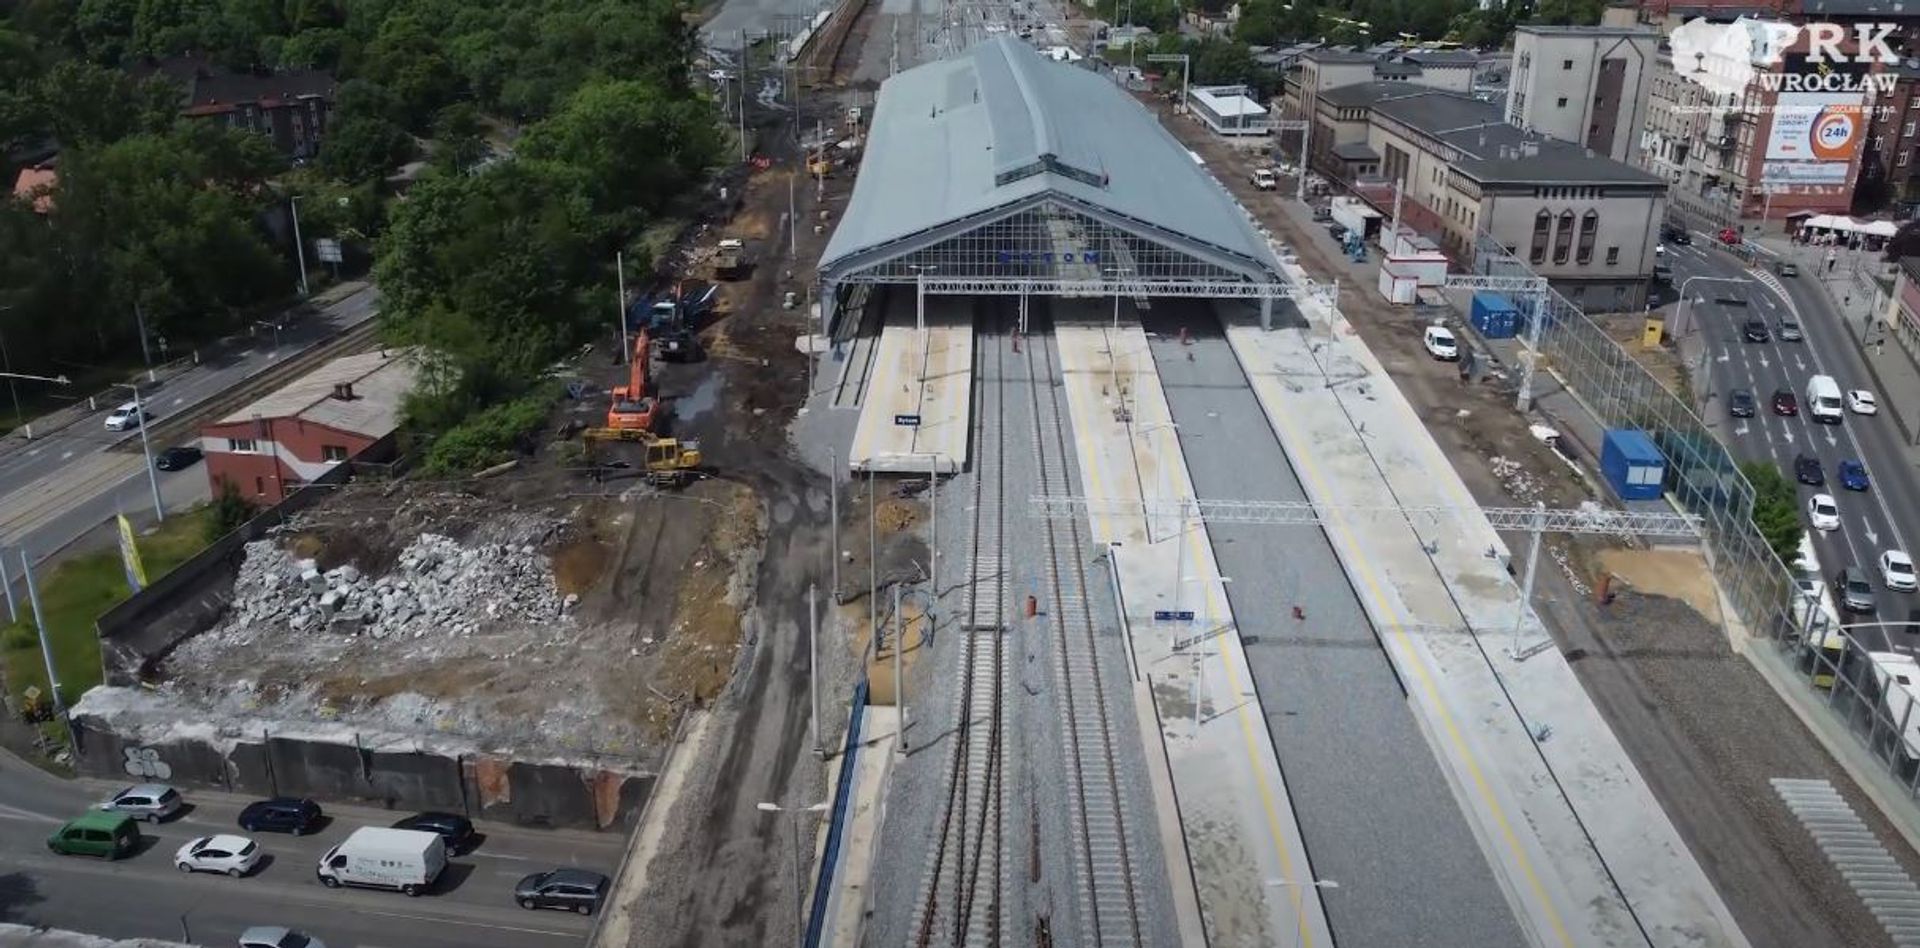 Trwają prace przy modernizacji stacji kolejowej w Bytomiu i linii kolejowej nr 131 